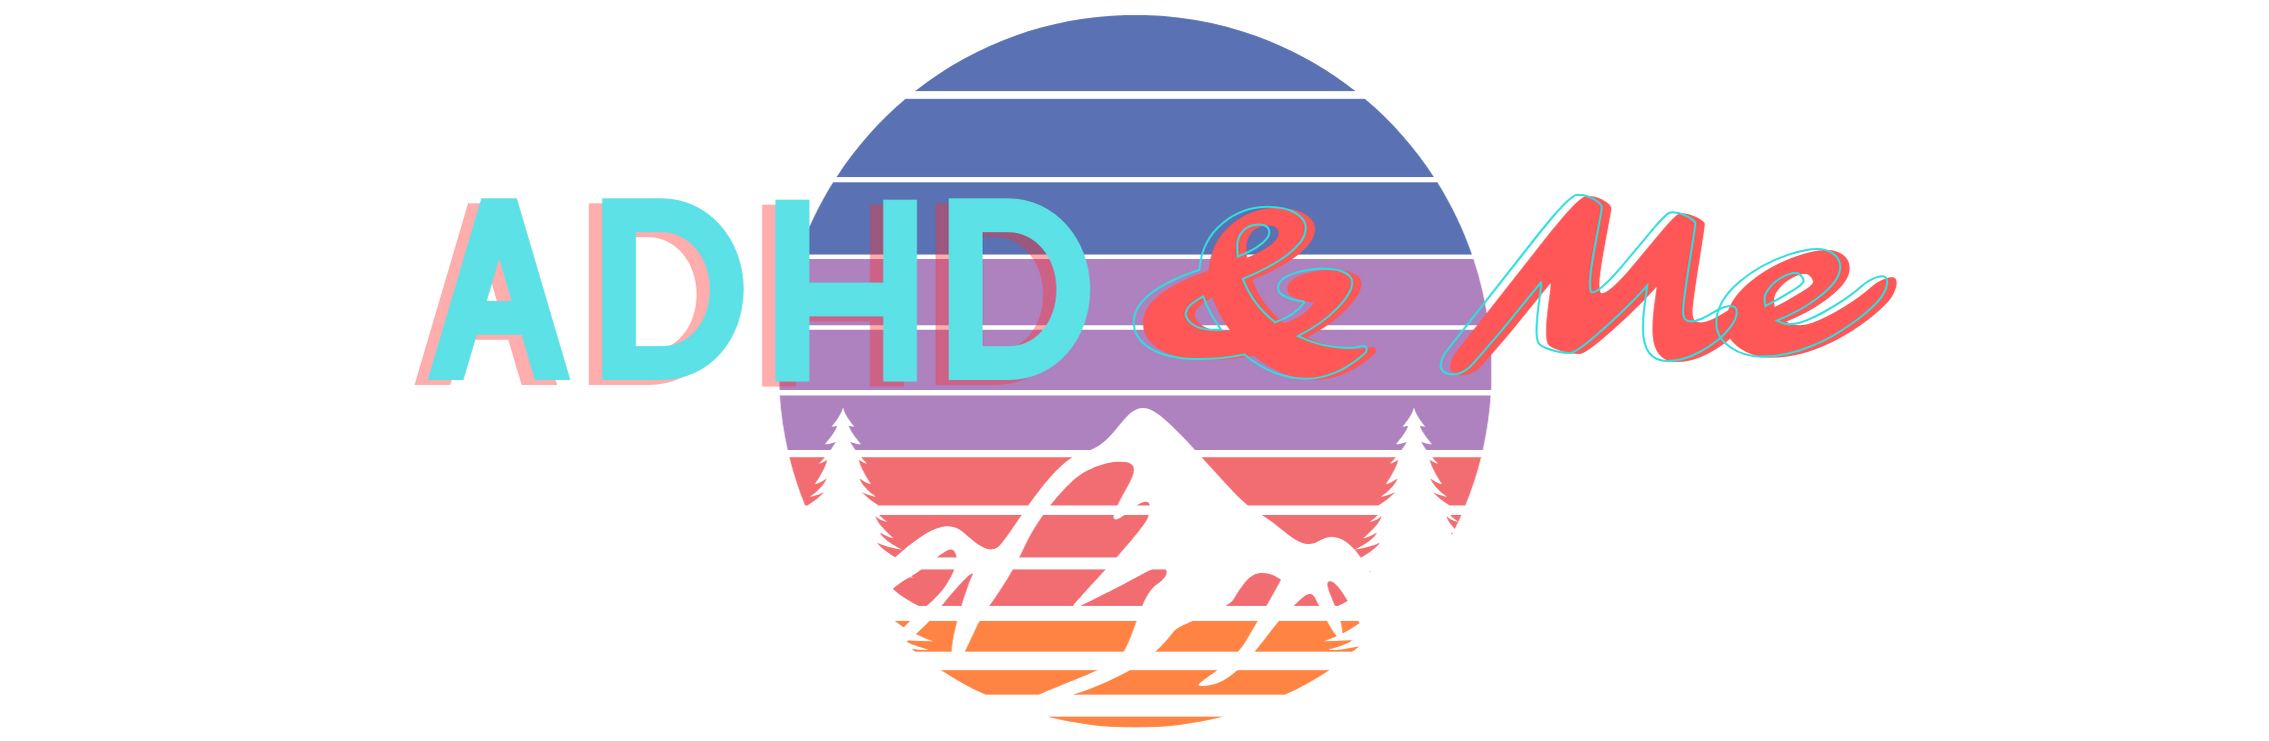 ADHD & Me Substack Logo